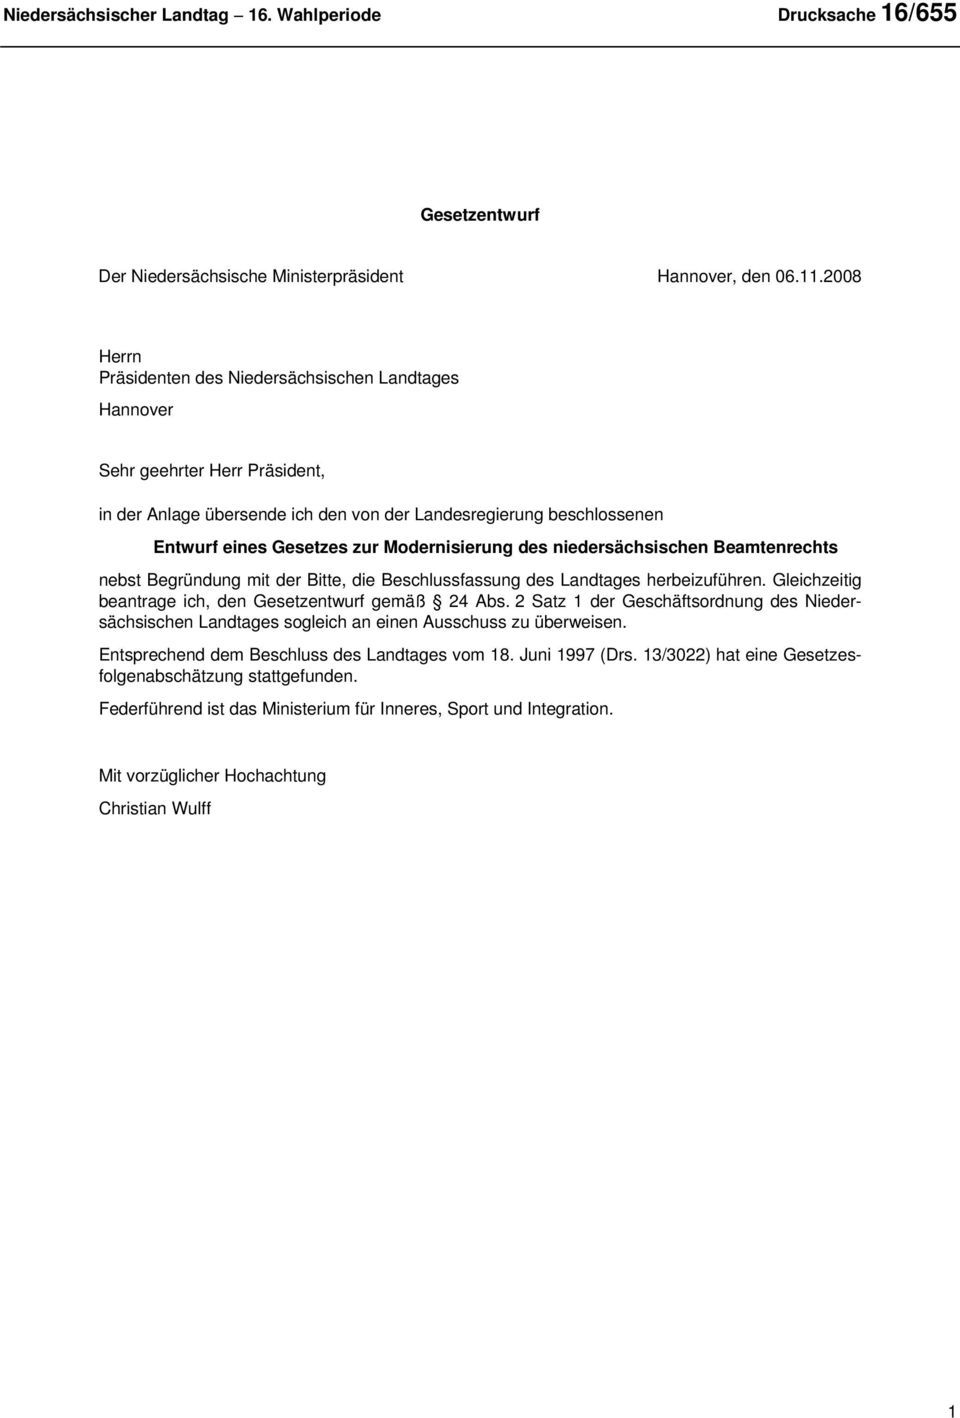 Modernisierung des niedersächsischen Beamtenrechts nebst Begründung mit der Bitte, die Beschlussfassung des Landtages herbeizuführen. Gleichzeitig beantrage ich, den Gesetzentwurf gemäß 24 Abs.